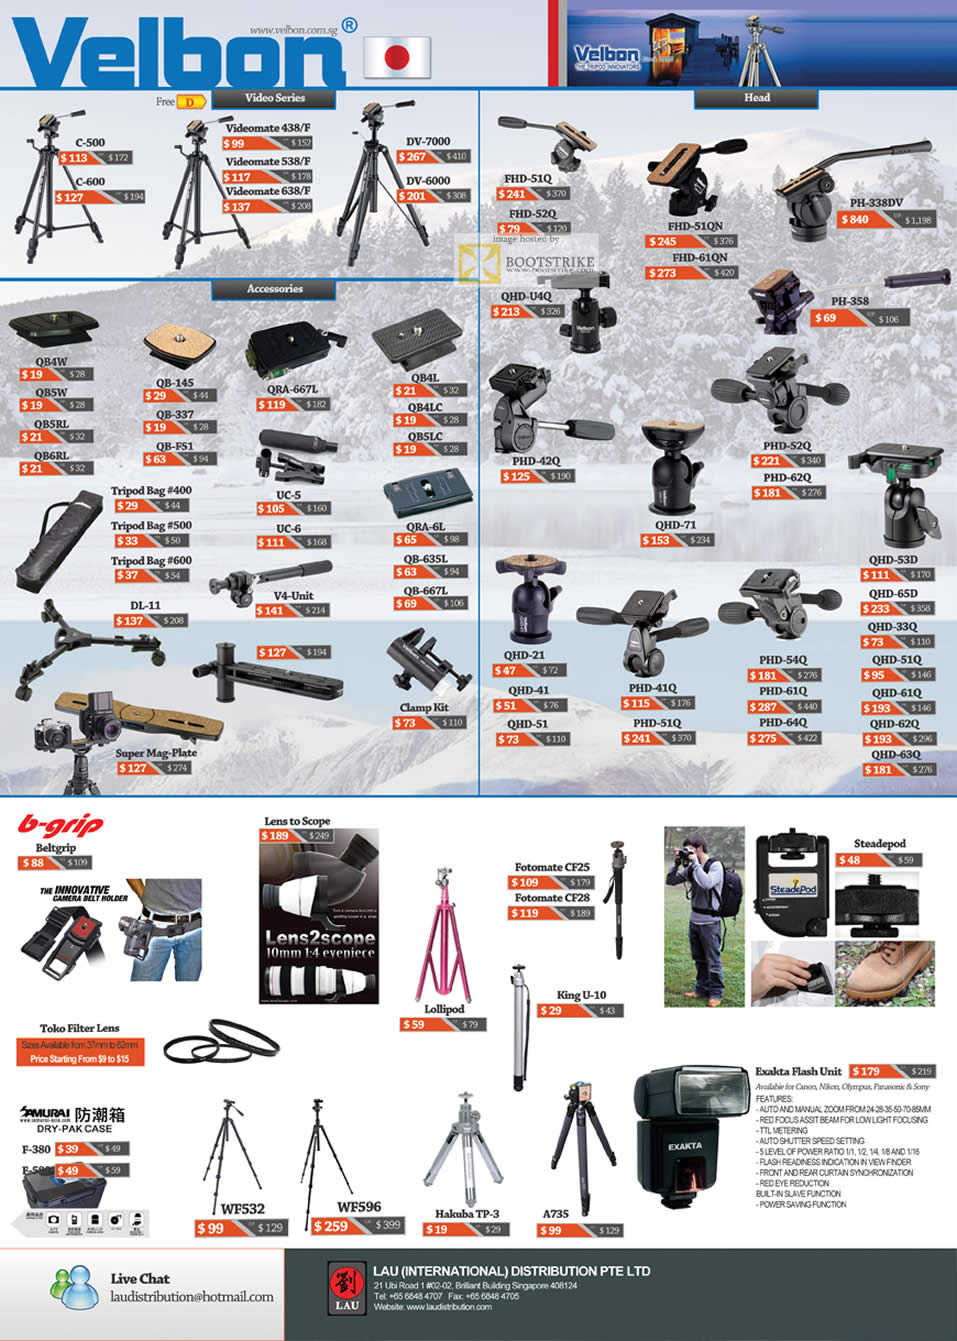 SITEX 2011 price list image brochure of Lau Intl Velbon Videomate Video Series, Head, Acessories, Tripod Bag, B-Grip, Fotomate, Steadepod, Exakta Flash Unit